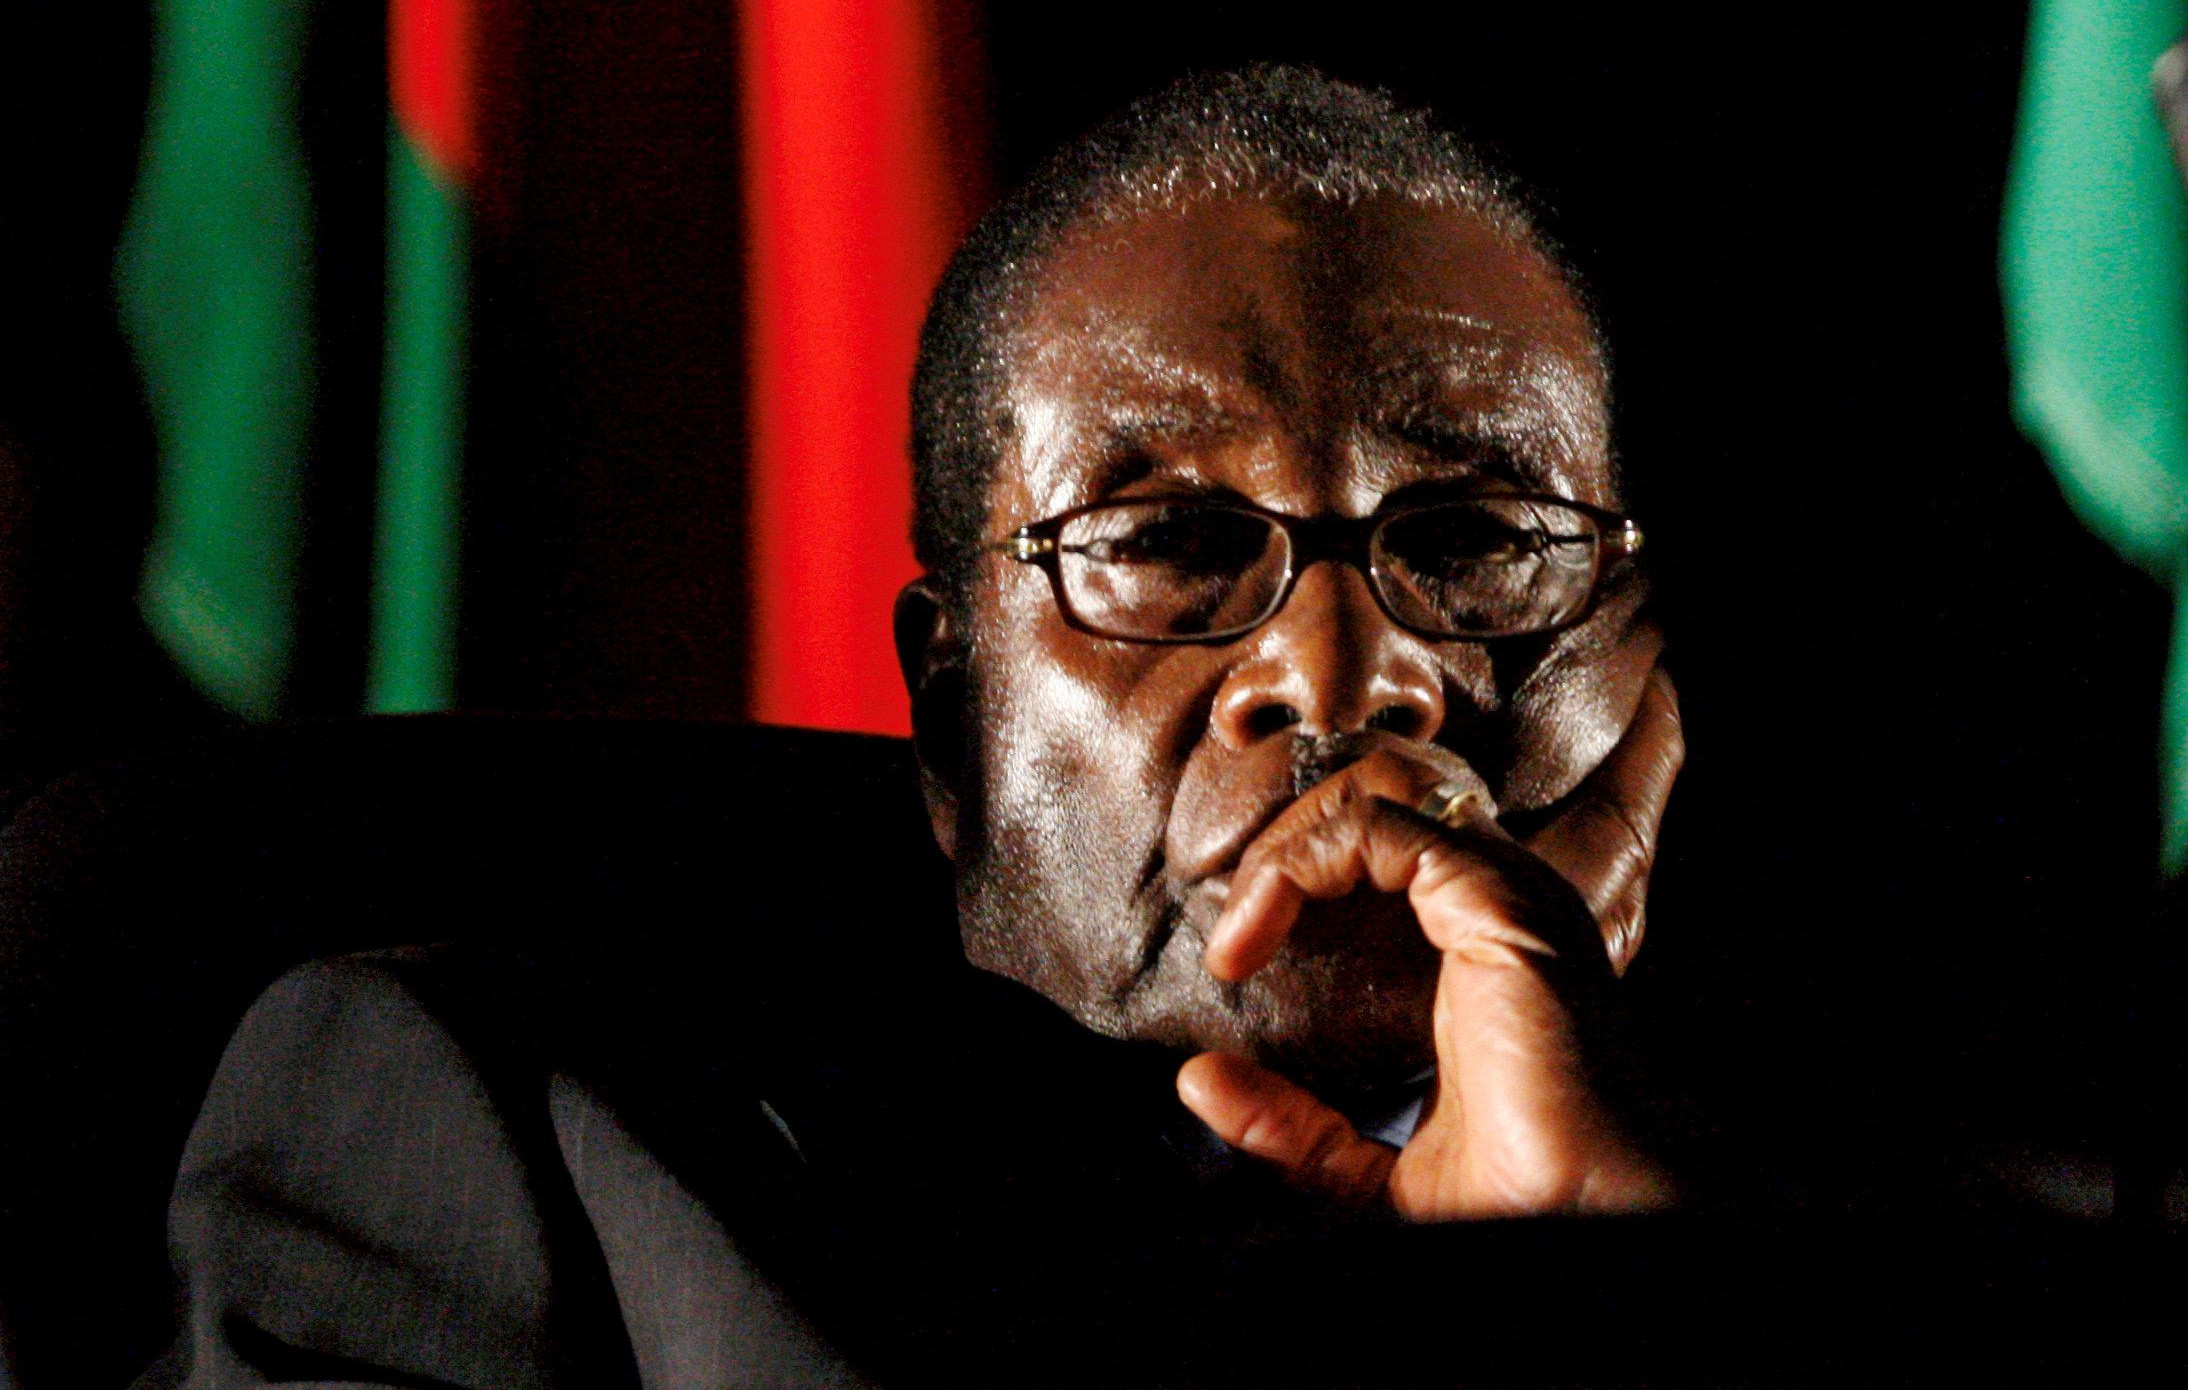 NAJBOLJI DIL U ISTORIJI! Lider Zimbabvea predao tron za pare: MUGABE DOBIO ČAK 10.000.000 DOLARA DA ODE S VLASTI